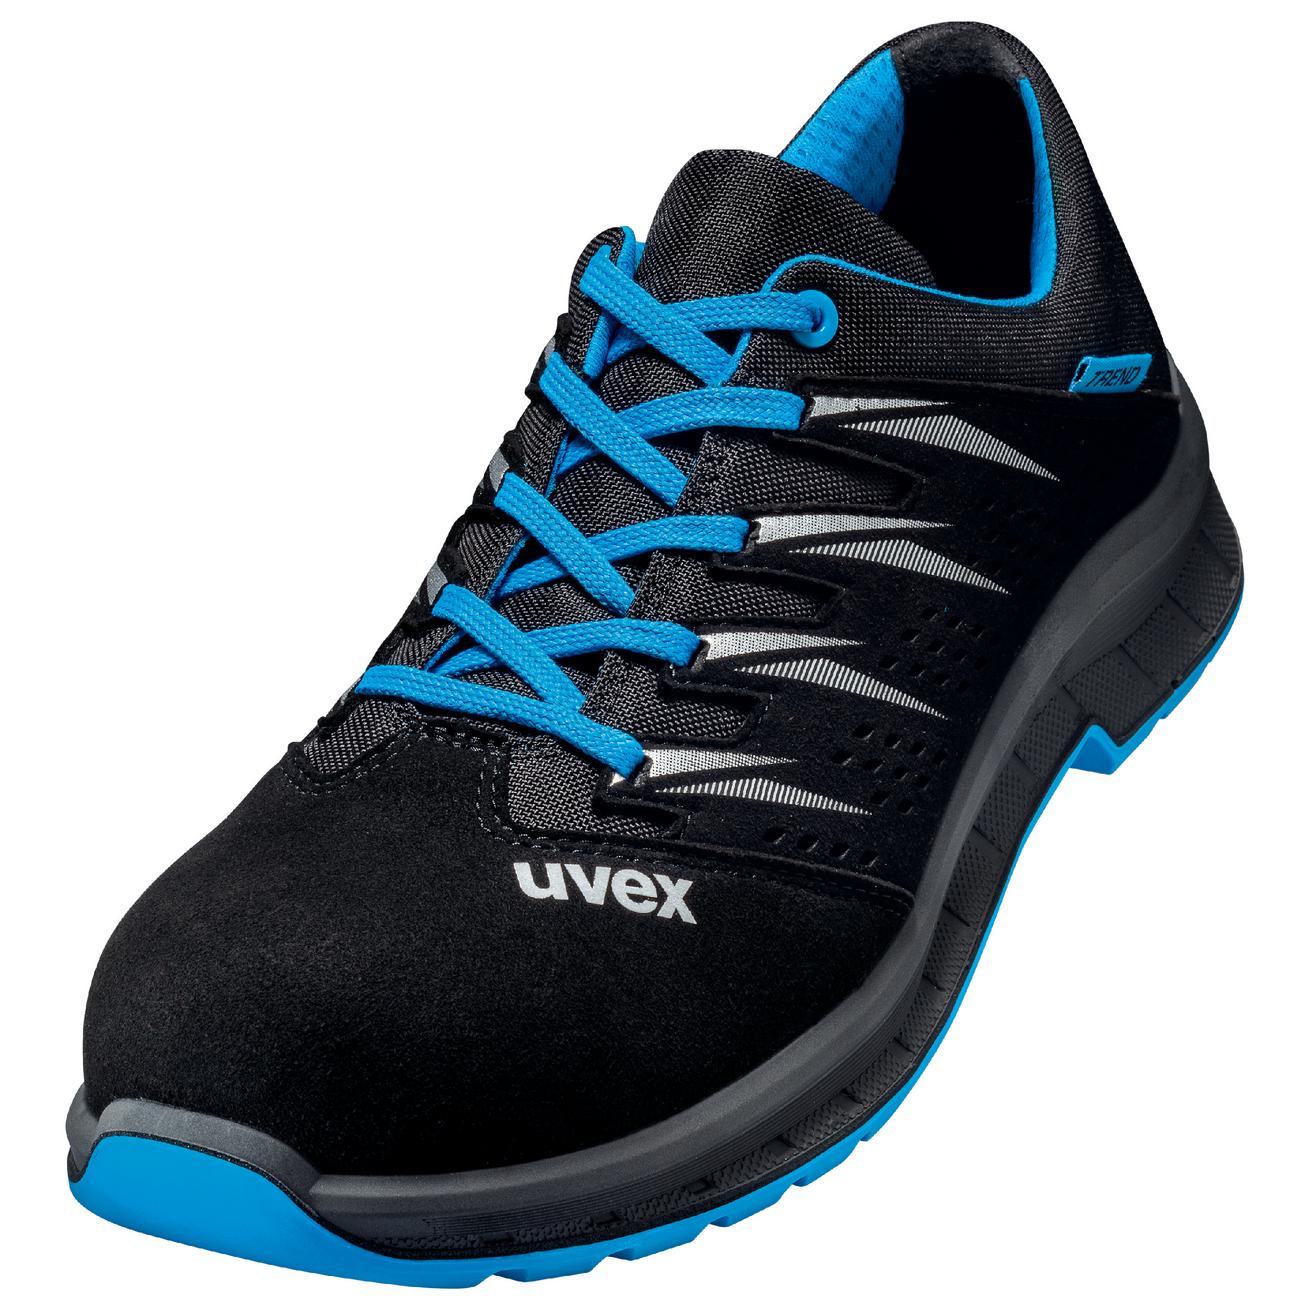 Perf. polobotka obuv uvex 2 trend, šíře 11, S1 SRC, černá/modrá 6937 Velikost: 47, Kód produktu: 6937847